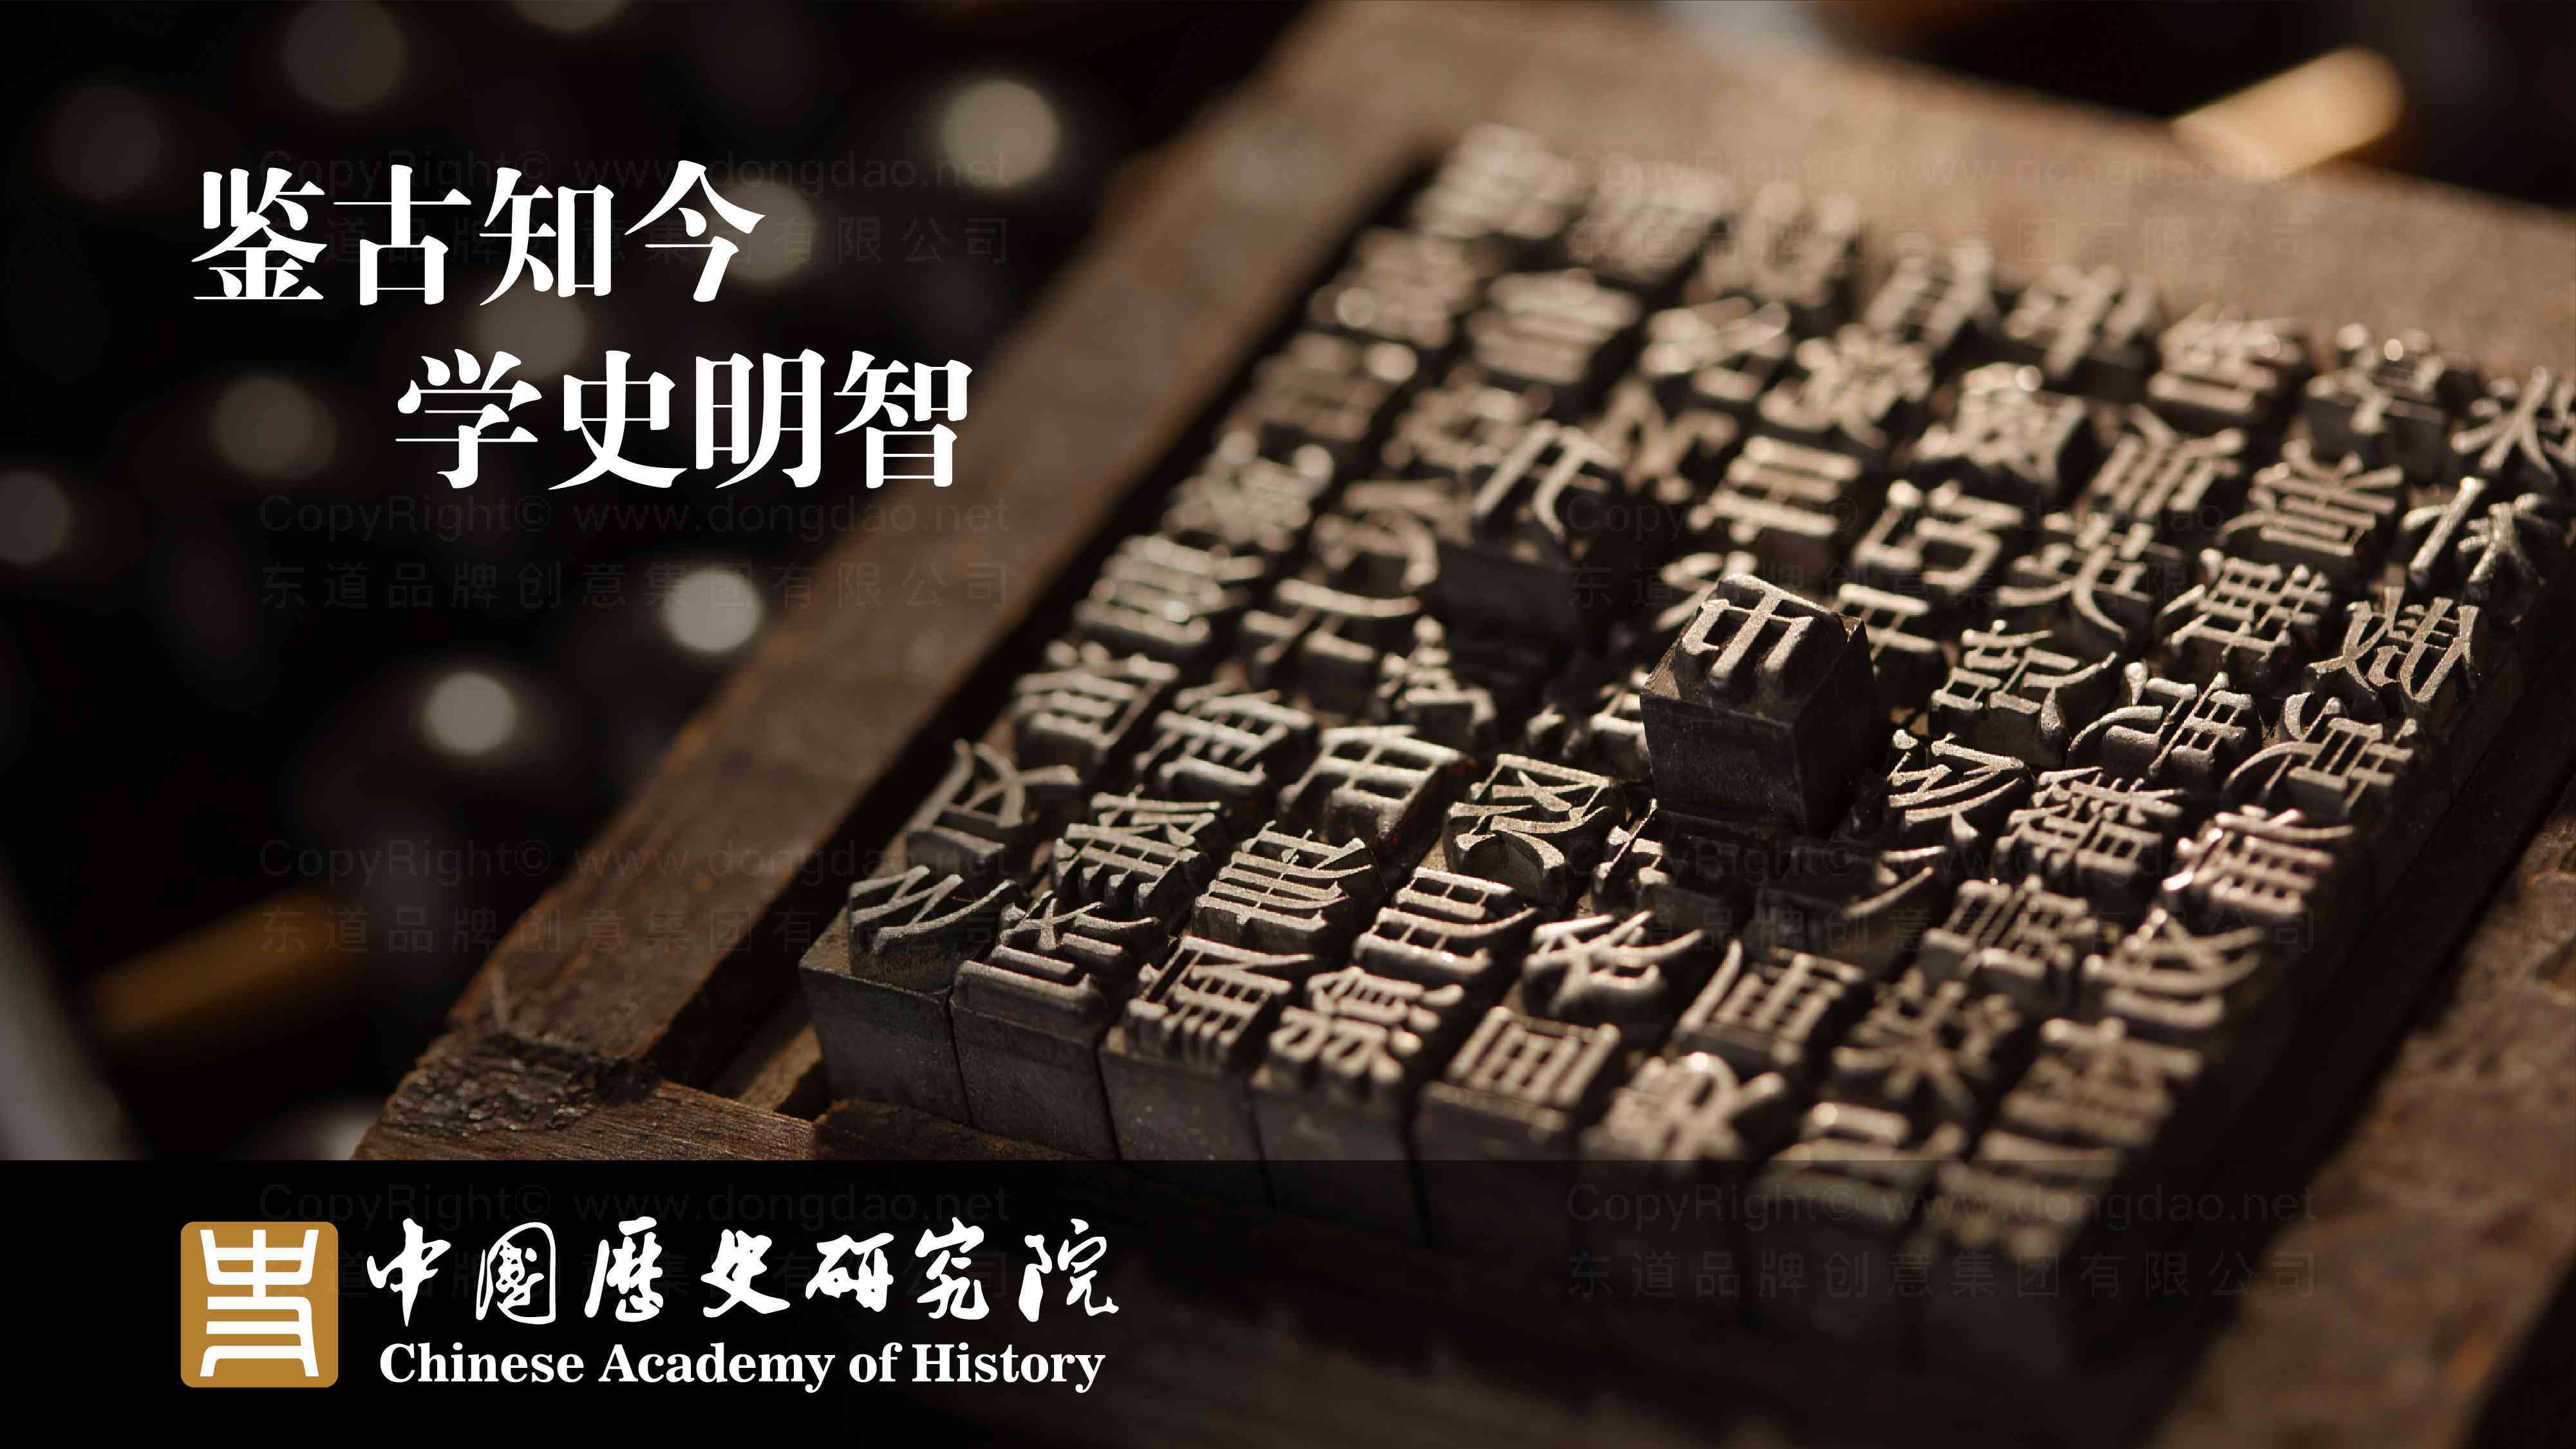 中國歷史研究院品牌logo設計圖片素材_2